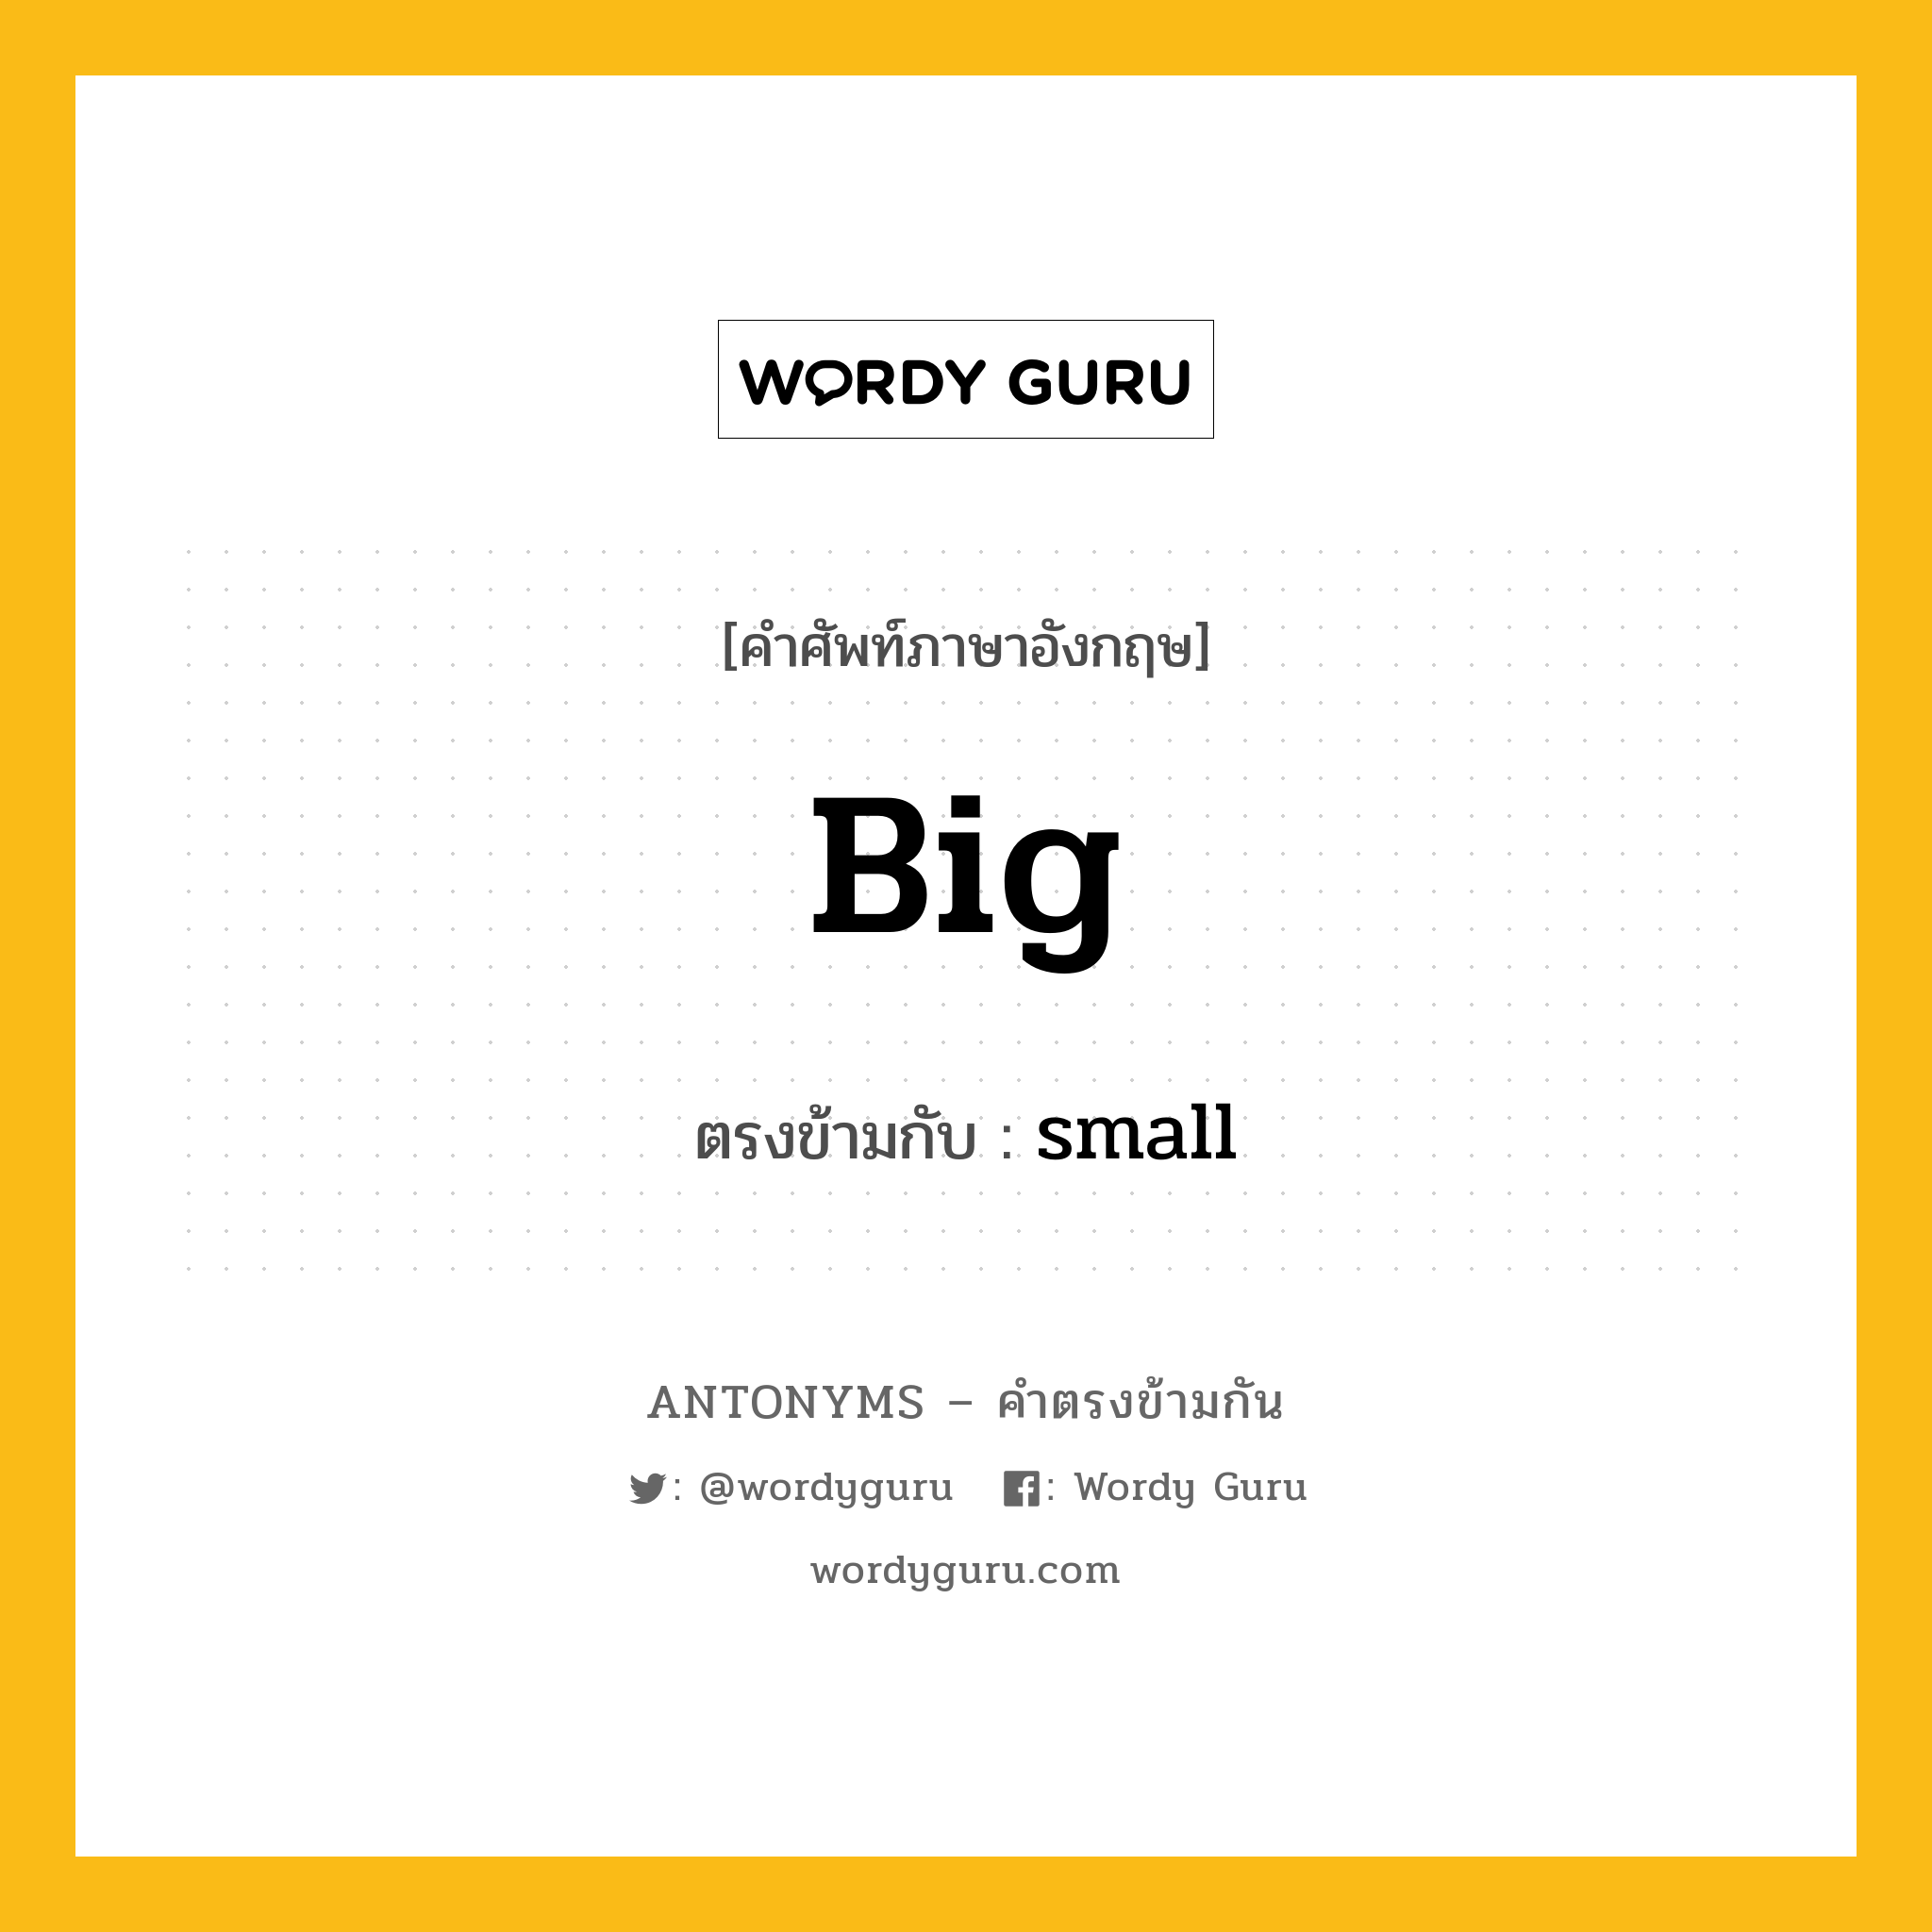 big เป็นคำตรงข้ามกับคำไหนบ้าง?, คำศัพท์ภาษาอังกฤษ big ตรงข้ามกับ small หมวด small